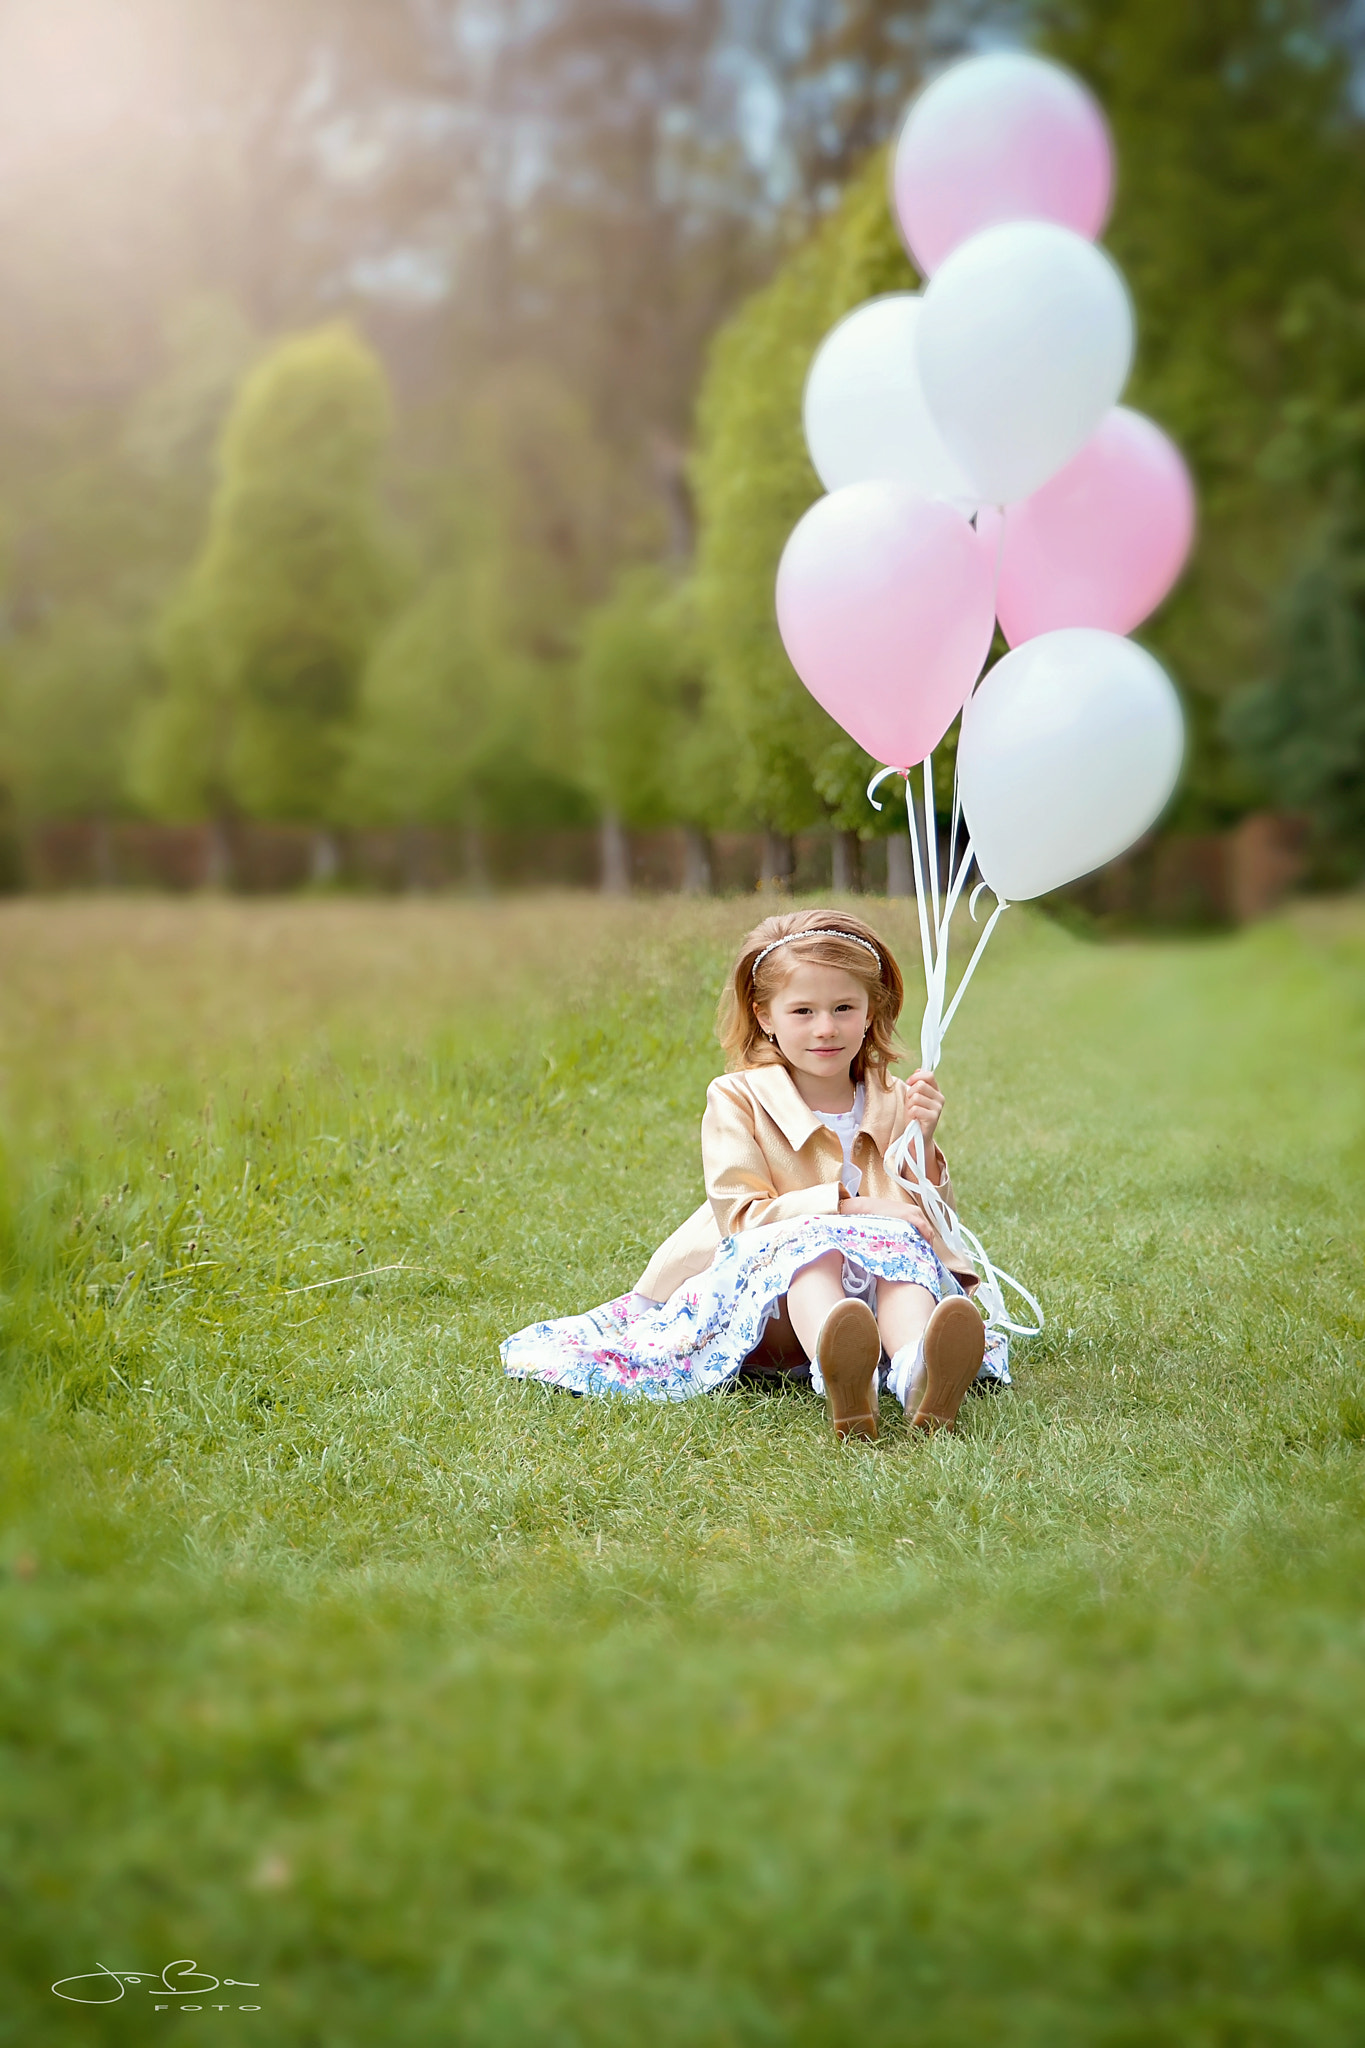 Canon EOS 80D + Sigma 24-70mm F2.8 EX DG Macro sample photo. Balloon girl photography